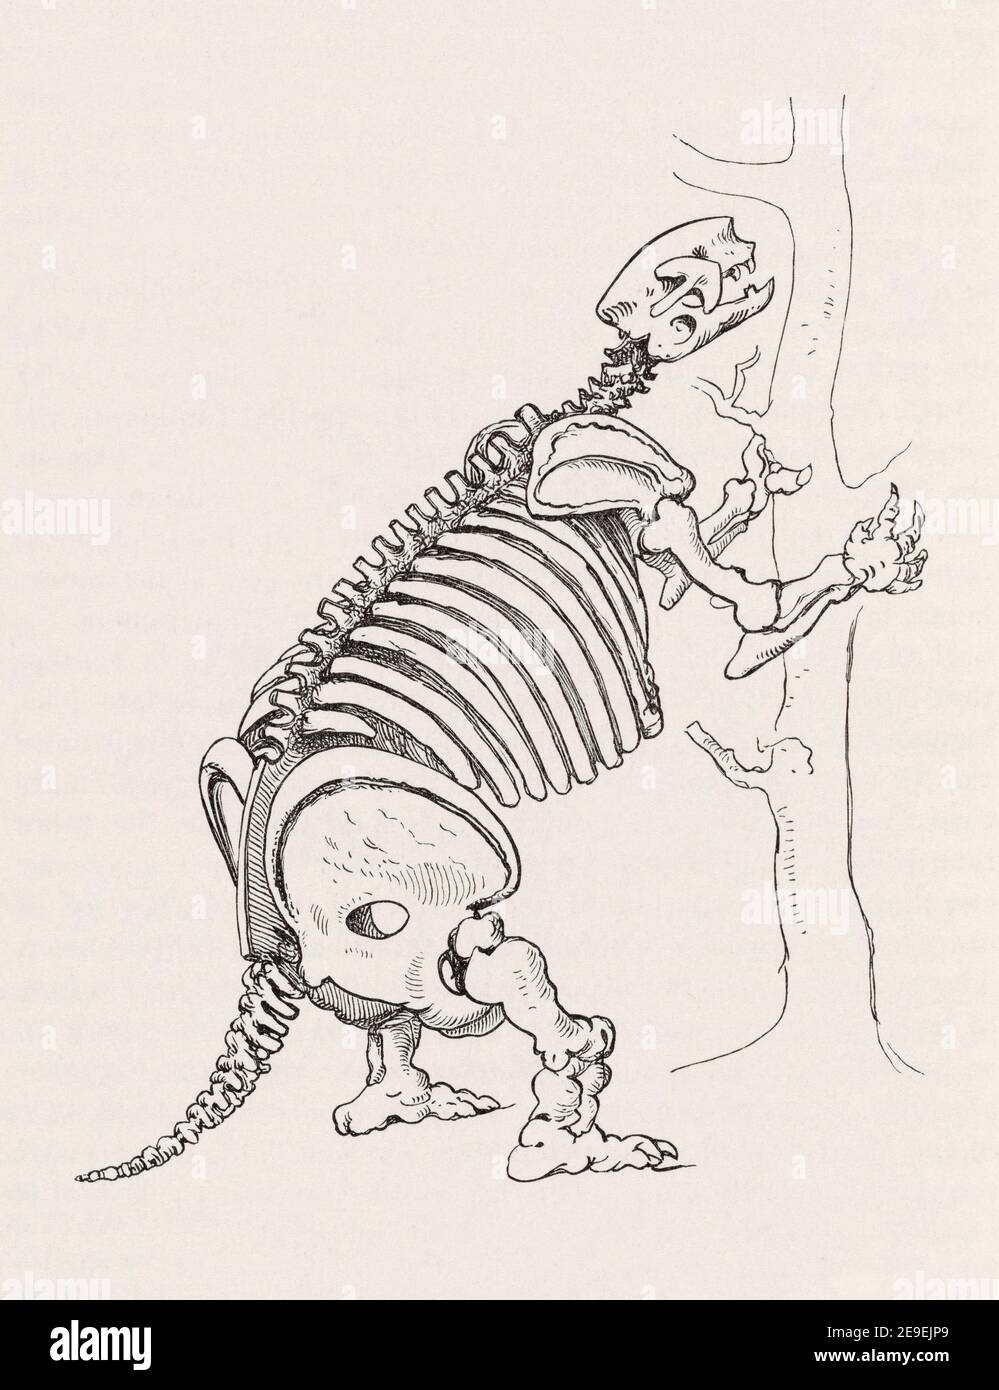 Esqueleto del extinto Mylodon. Mylodon darwini. El mylodon era un perezoso terrestre de la Patagonia, América del Sur, que creció a 2 a 3 metros de largo y podía pesar en las cercanías de 1000 kilos. Se cree que el animal estuvo extinto por alrededor de 10,000 años. Foto de stock